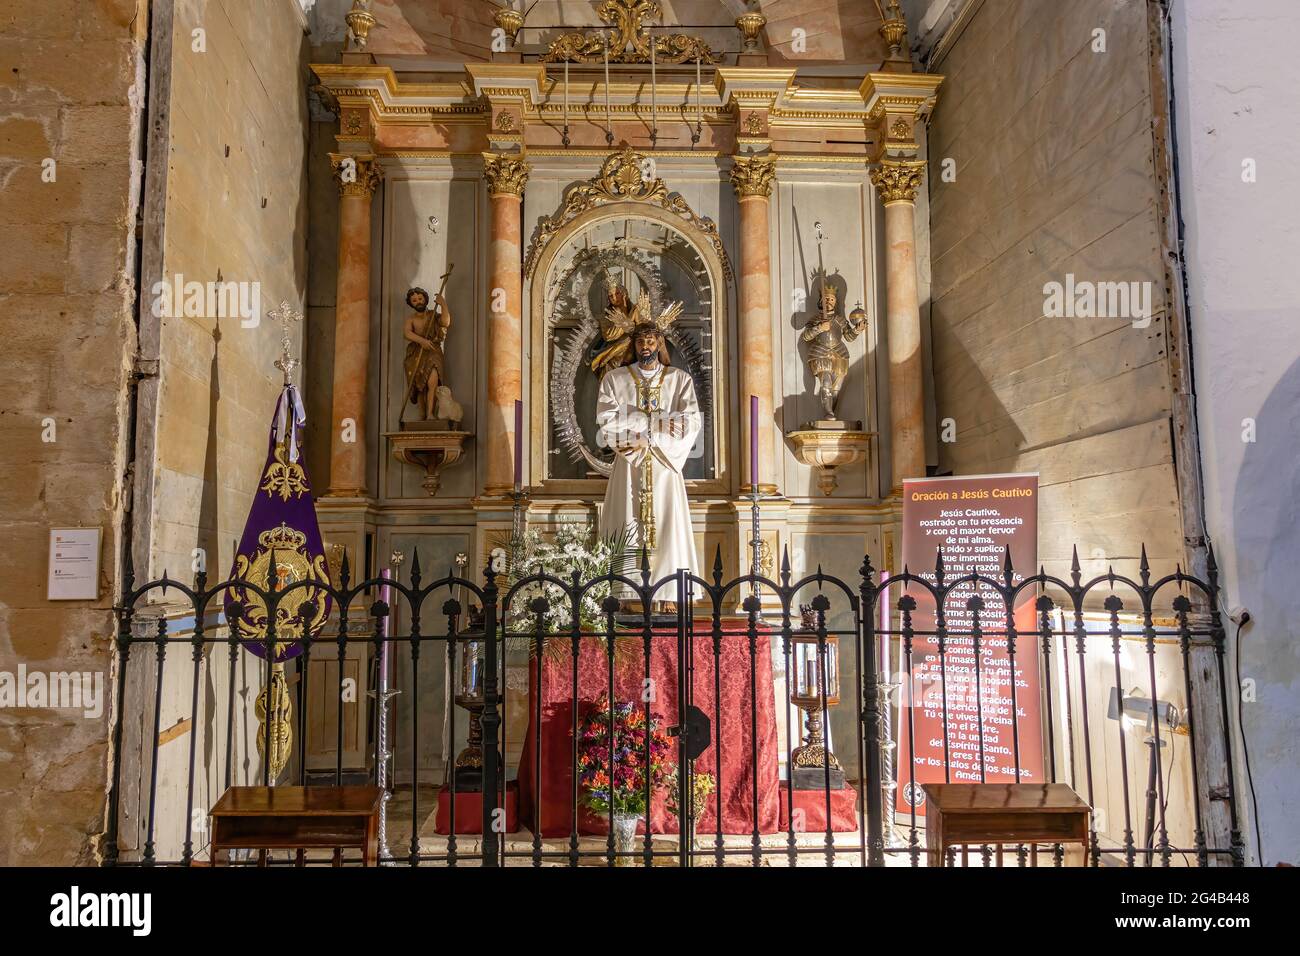 Medina-Sidonia, Cadix, Espagne - 15 juin 2021 : image de Jésus captive à l'intérieur de l'église de Santa Maria dans la ville de Medina-Sidonia dans la province Banque D'Images